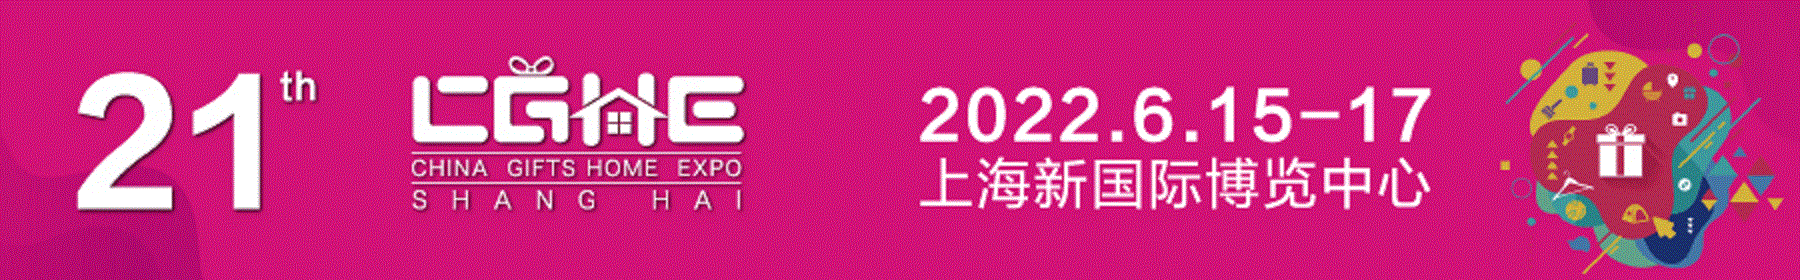 上海礼品展-2022年上海礼品展